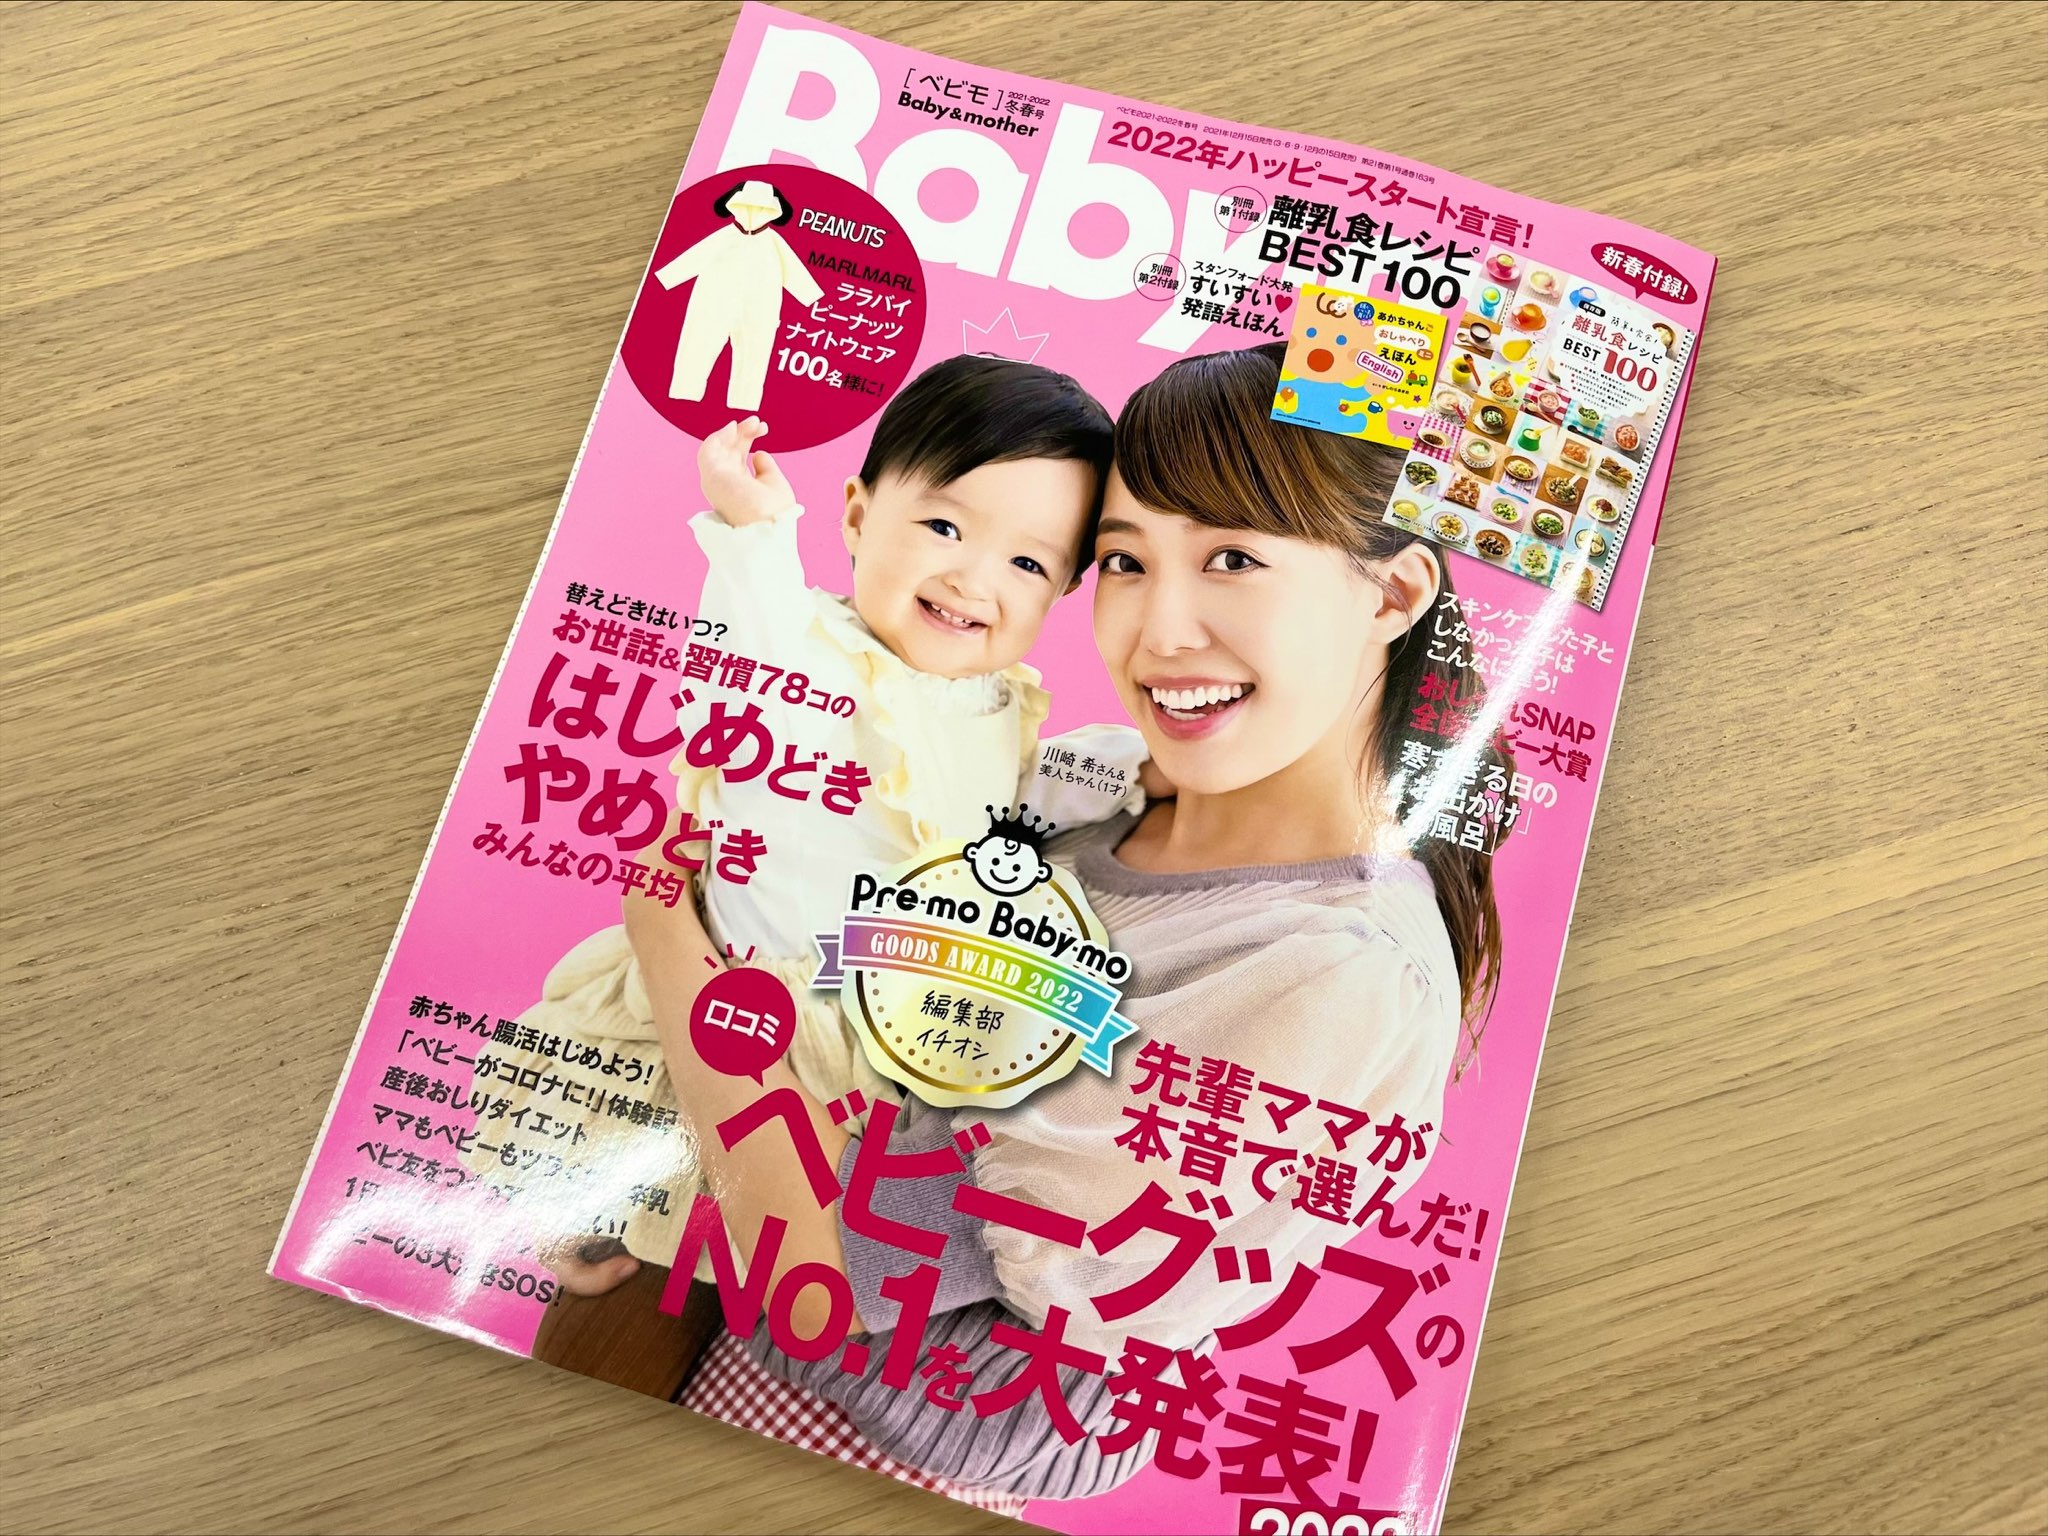 【メディア掲載情報】雑誌「Baby-mo(ベビモ) 2021年冬春号」にdevirockの商品が掲載されました。